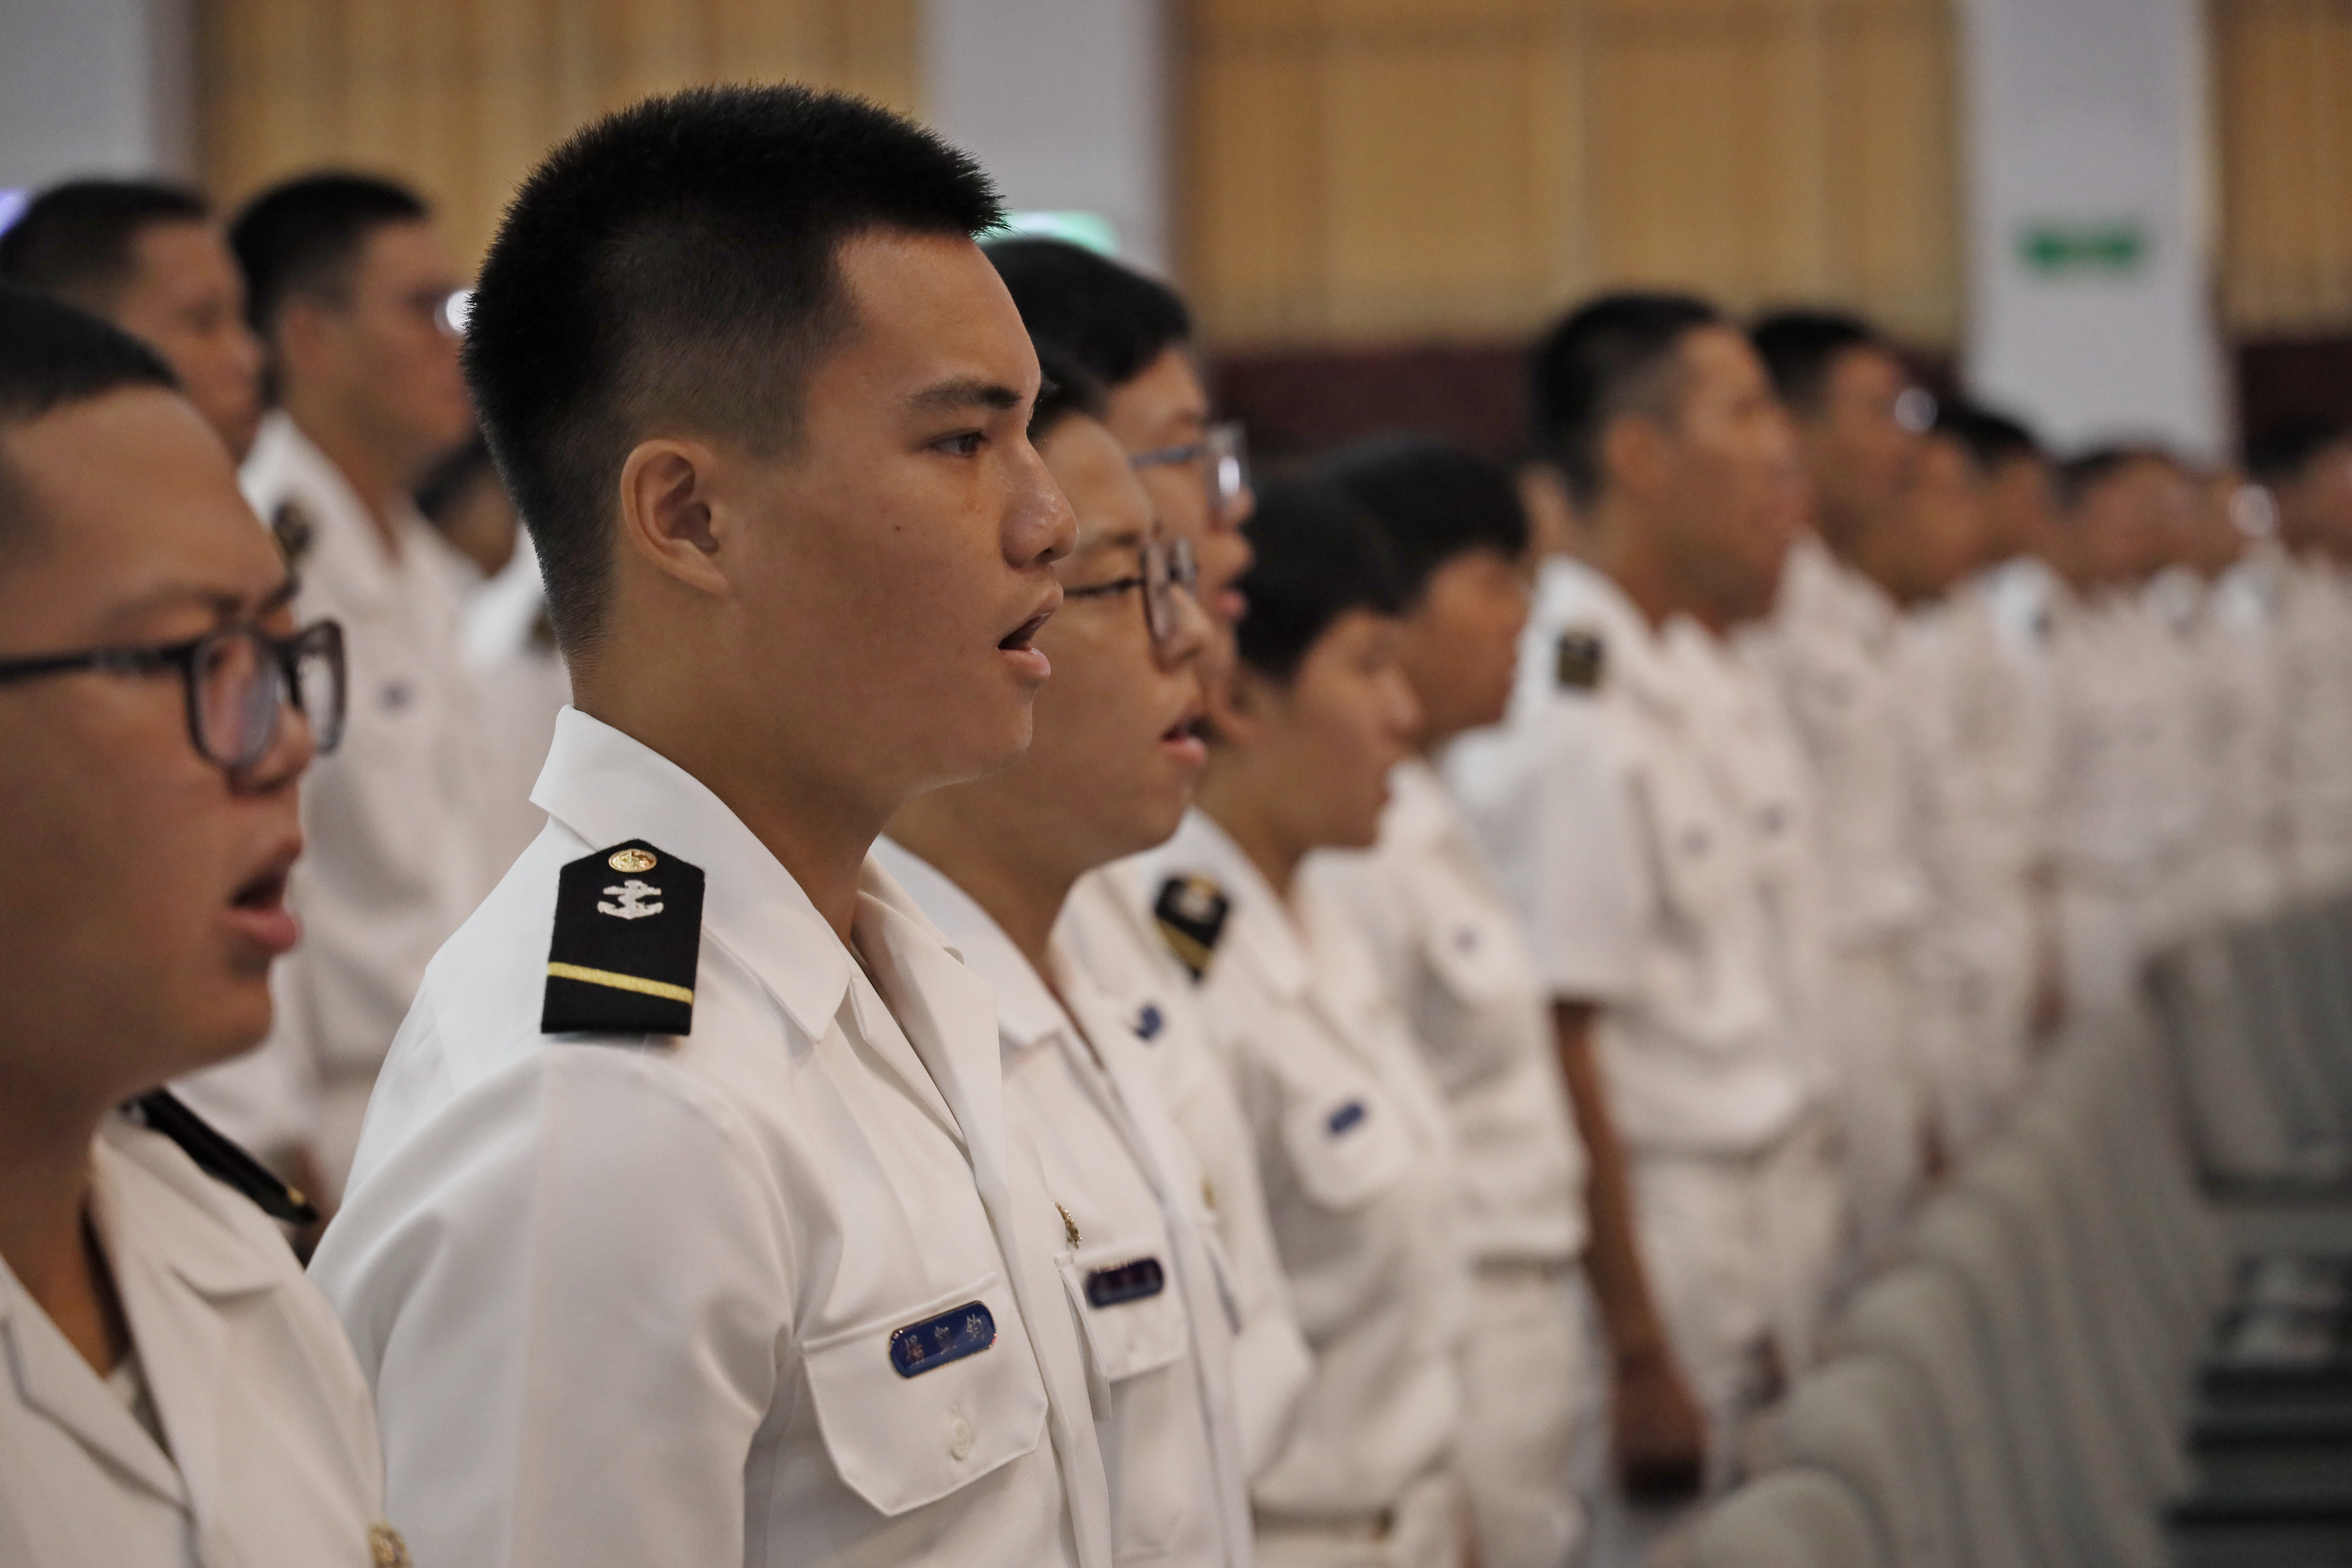 全體人員齊唱「海軍官校校歌」。